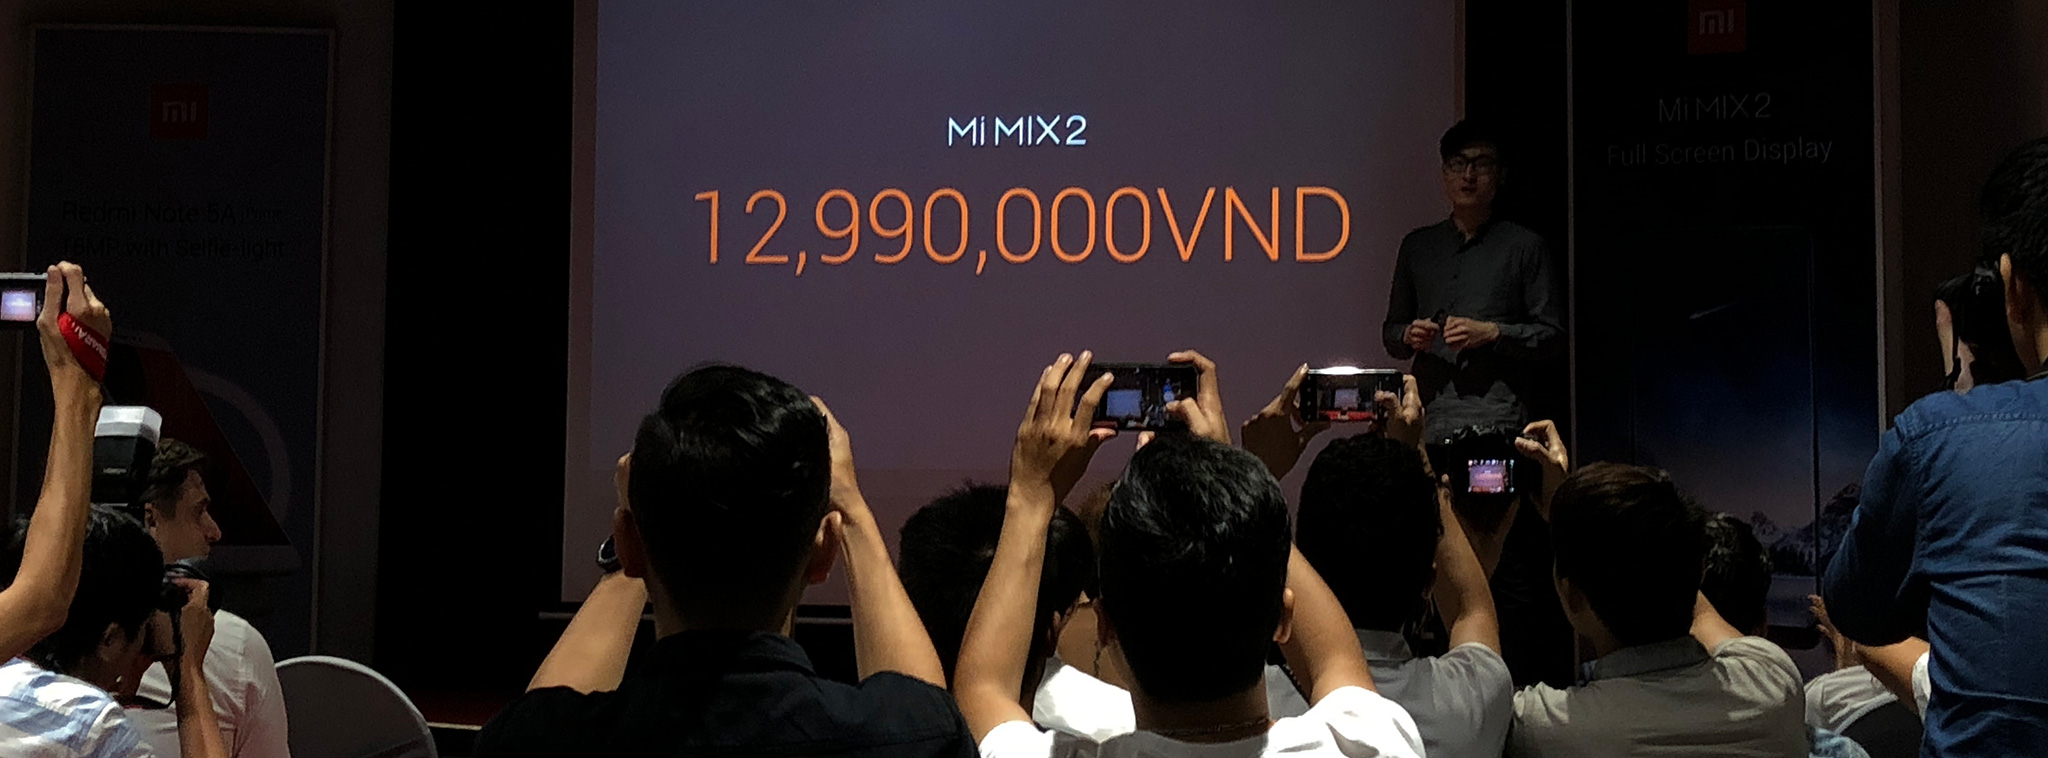 Xiaomi Mimix 2, Redmi Note 5A Prime chính hãng: 13 triệu, 4,3 triệu